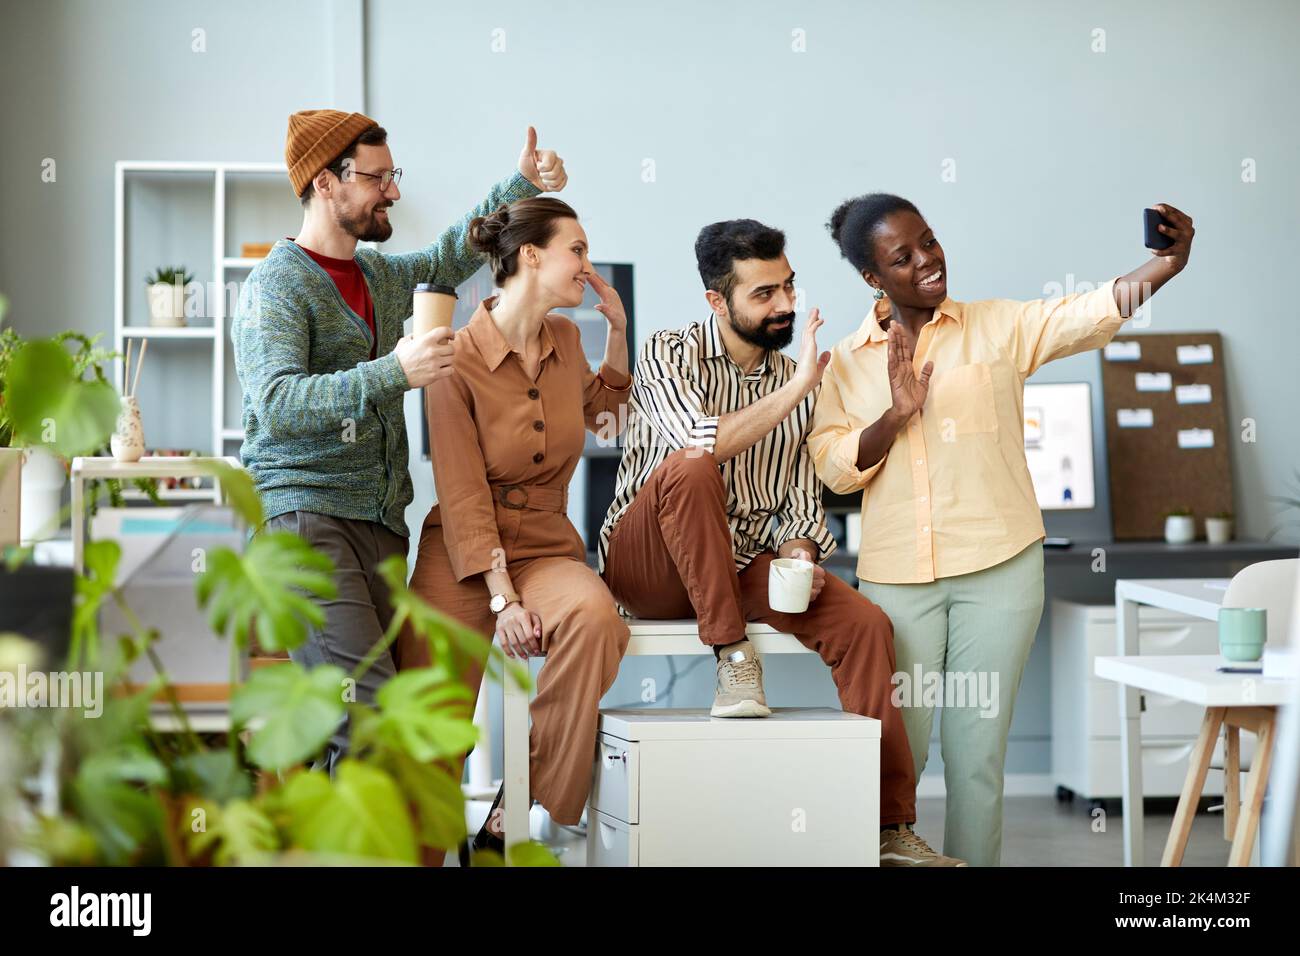 Seitenansicht von vier jungen, fröhlichen Mitarbeitern, die mit ihren Händen schwenken und lächelnd auf die Smartphone-Kamera blicken, während sie im Video-Chat kommunizieren Stockfoto